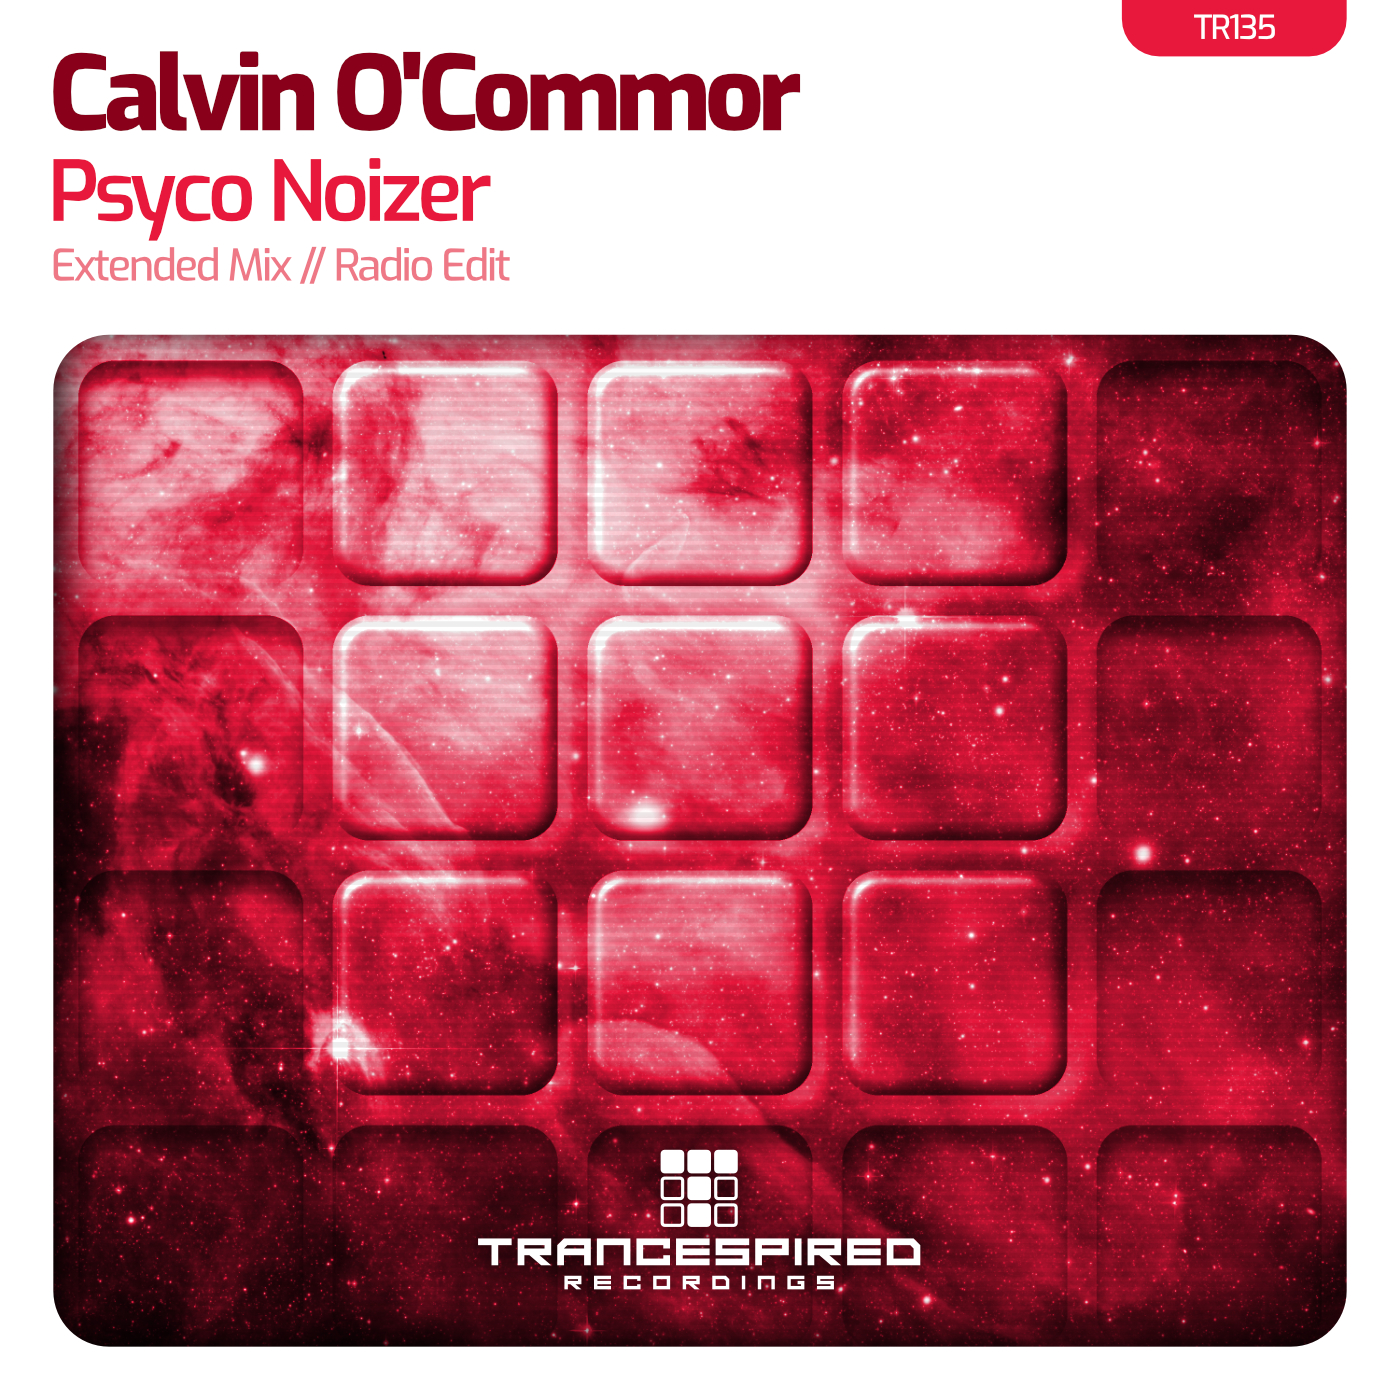 Calvin O'Commor presents Psyco Noizer on Trancespired Recordings